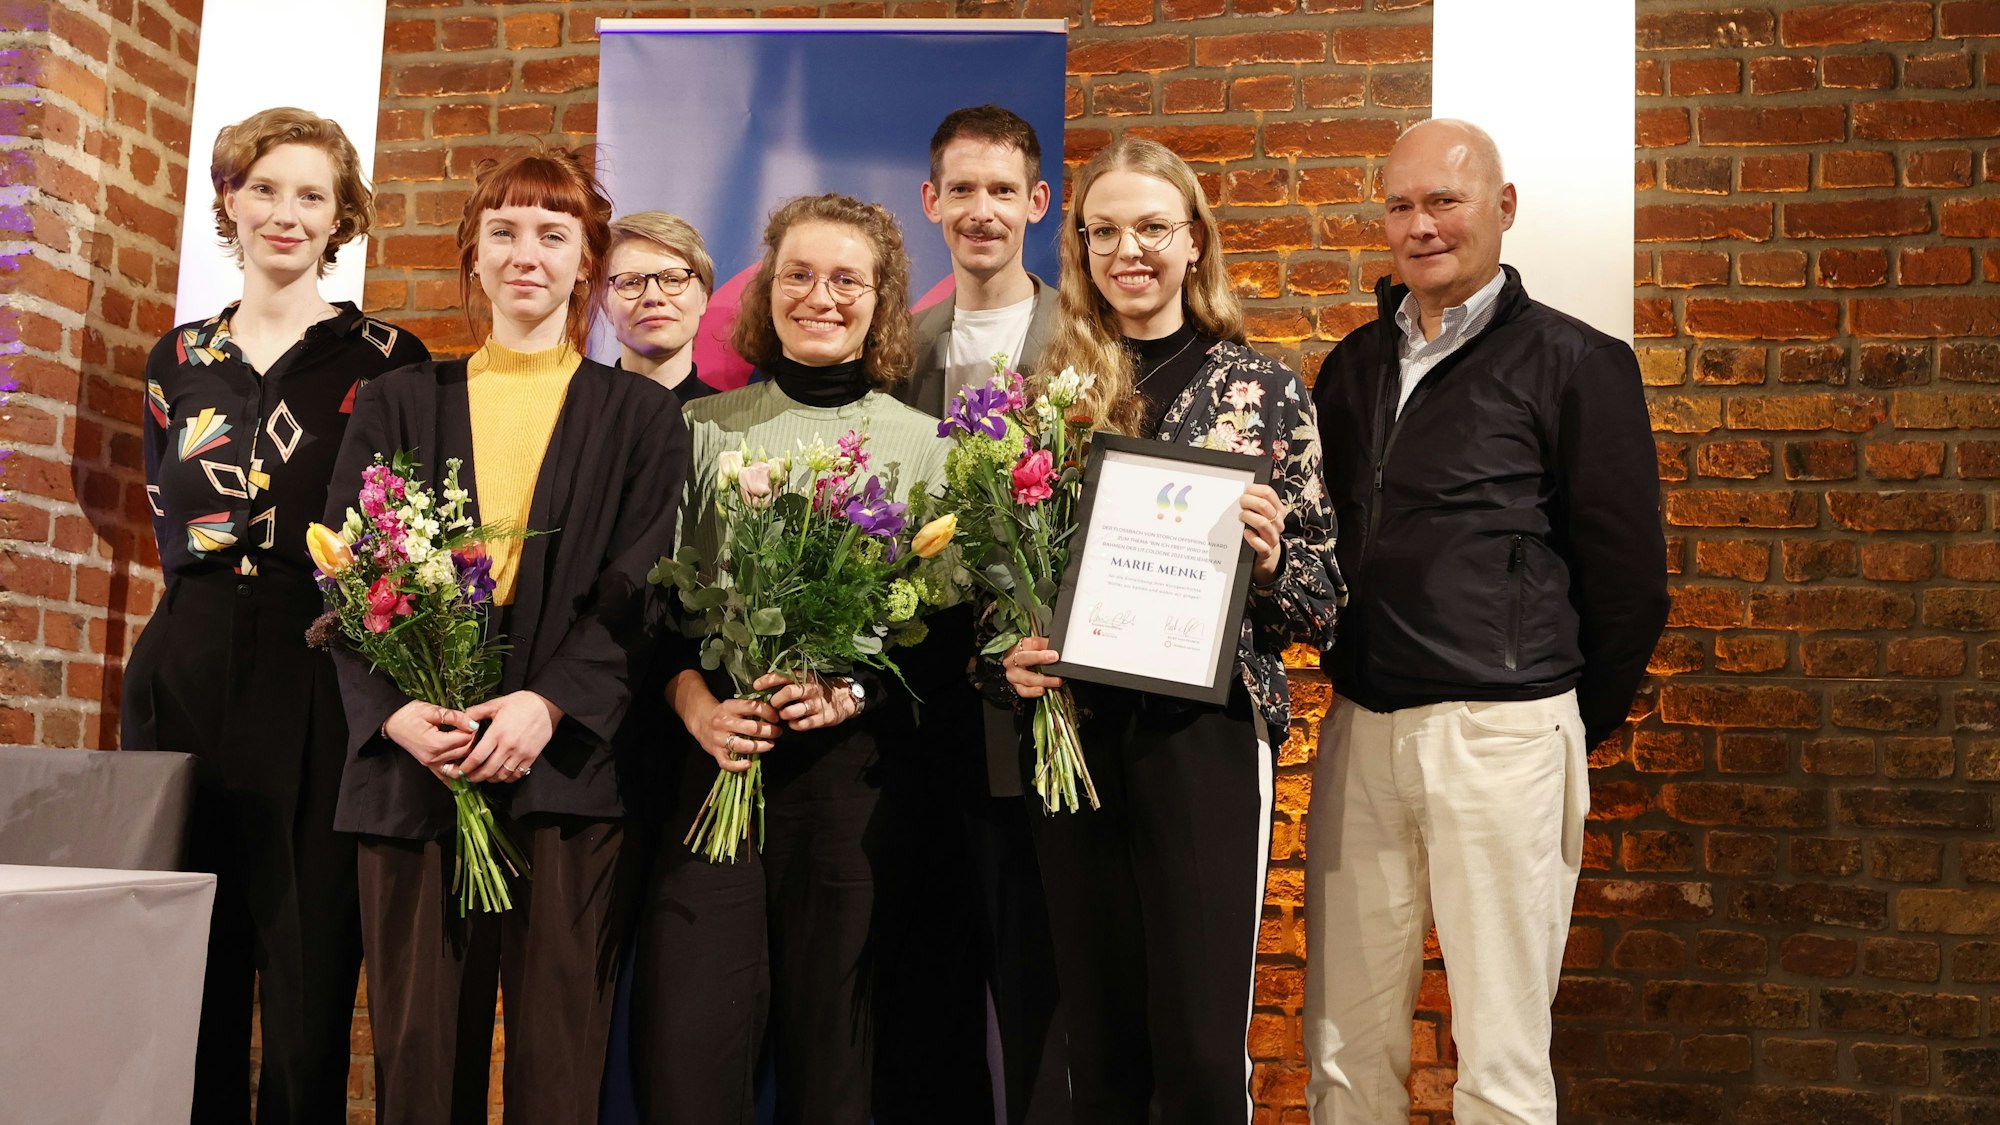 Luise Wolfram (v. links), Leonie Ziem, Nadja Küchenmeister, Verena Schieber, Benni Bauerdick, Marie Menke und Kurt von Storch lächeln in die Kamera. Die Finalistinnen haben Blumensträuse in der Hand, Gewinnerin Marie Menke dazu eine Urkunde.